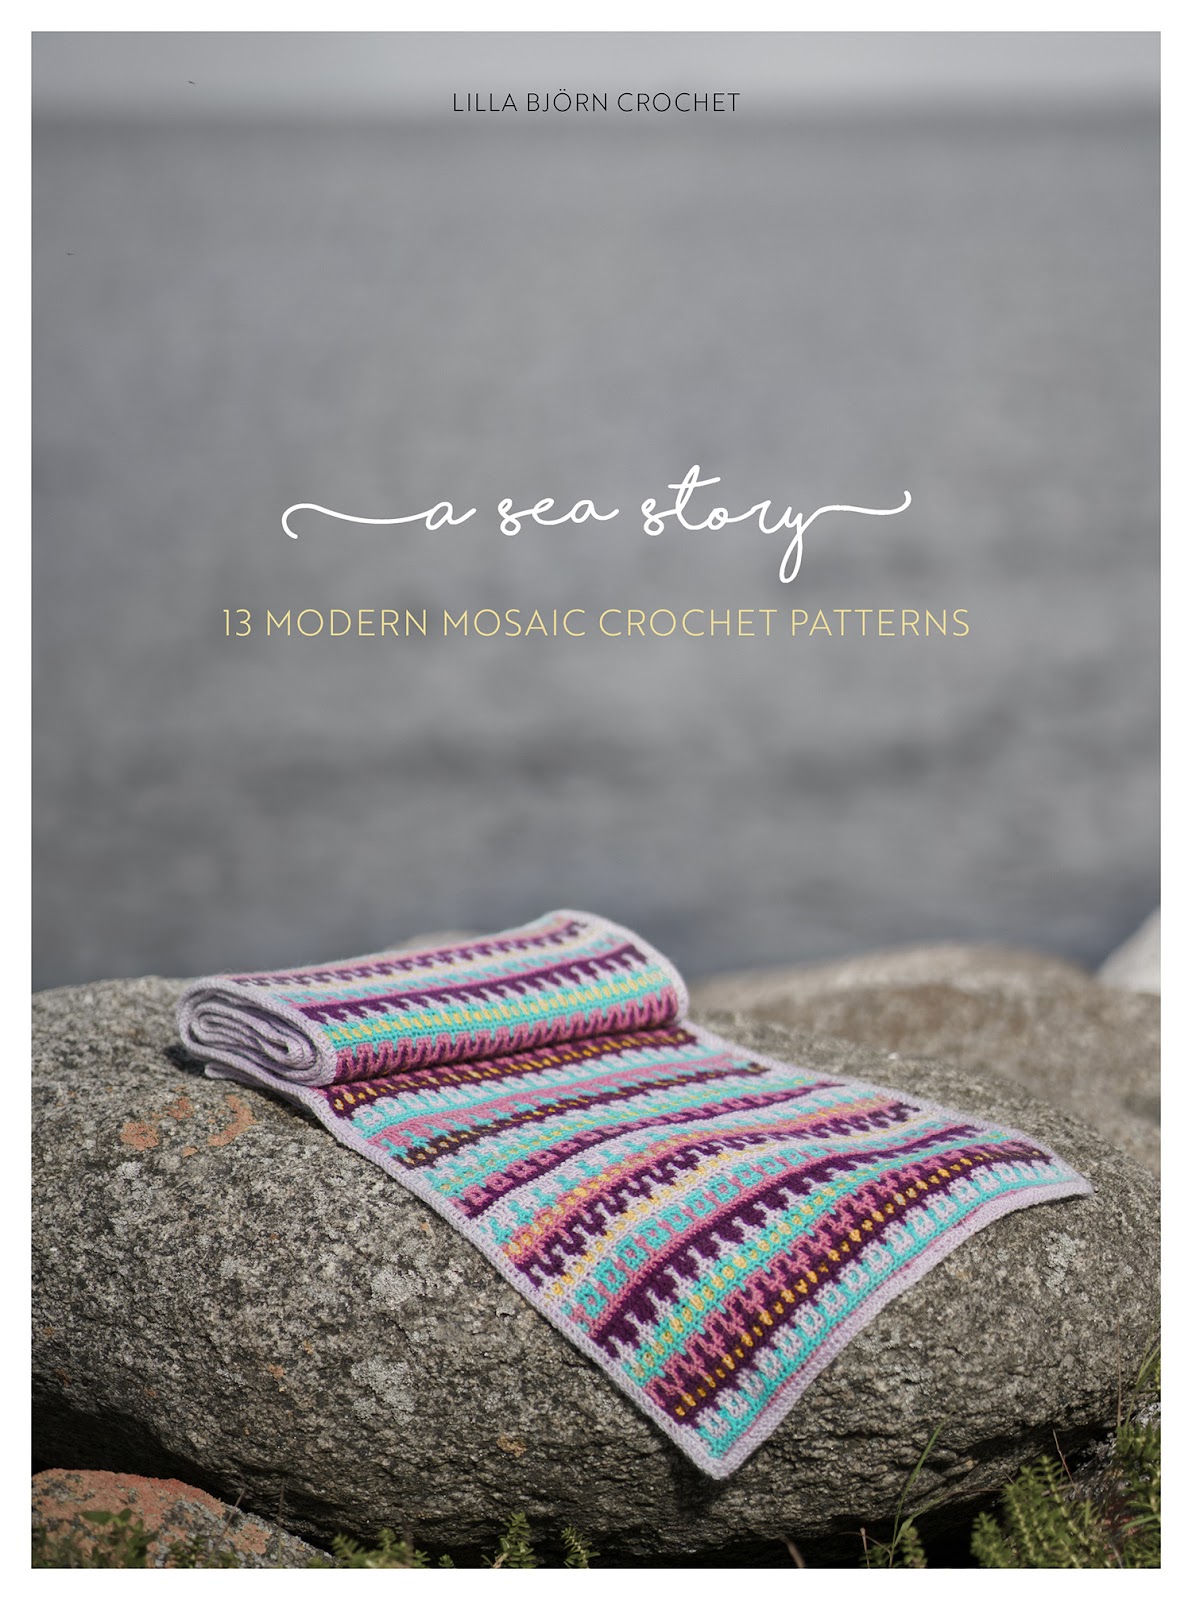 Let's Make Crochet for Beginners November 2020 Read Crochet Patterns